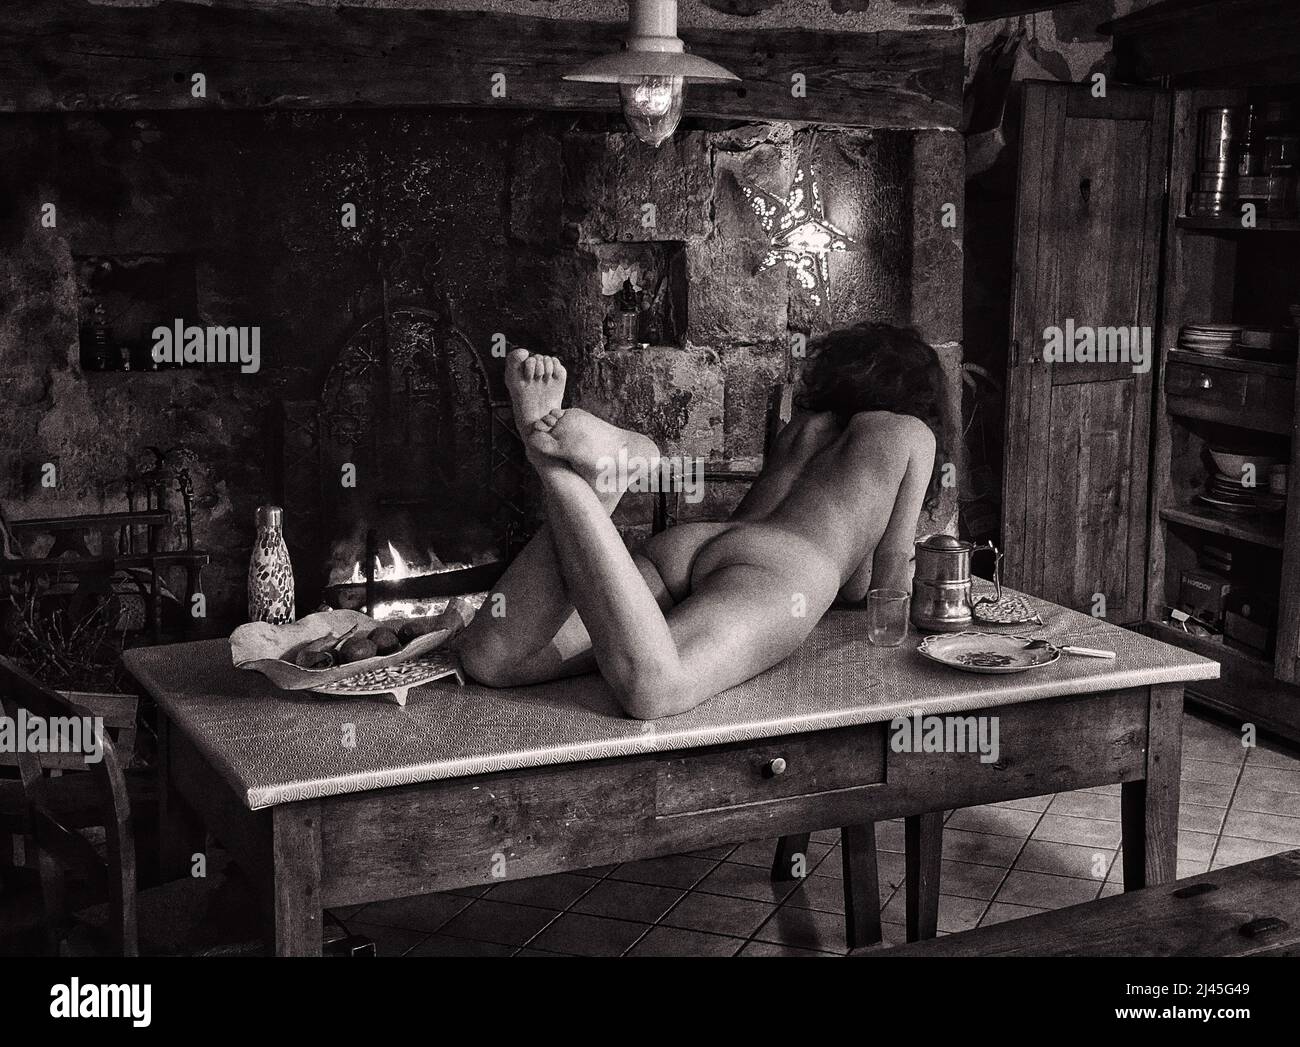 Femme nue allongé sur une table dans une vieille ferme Banque D'Images